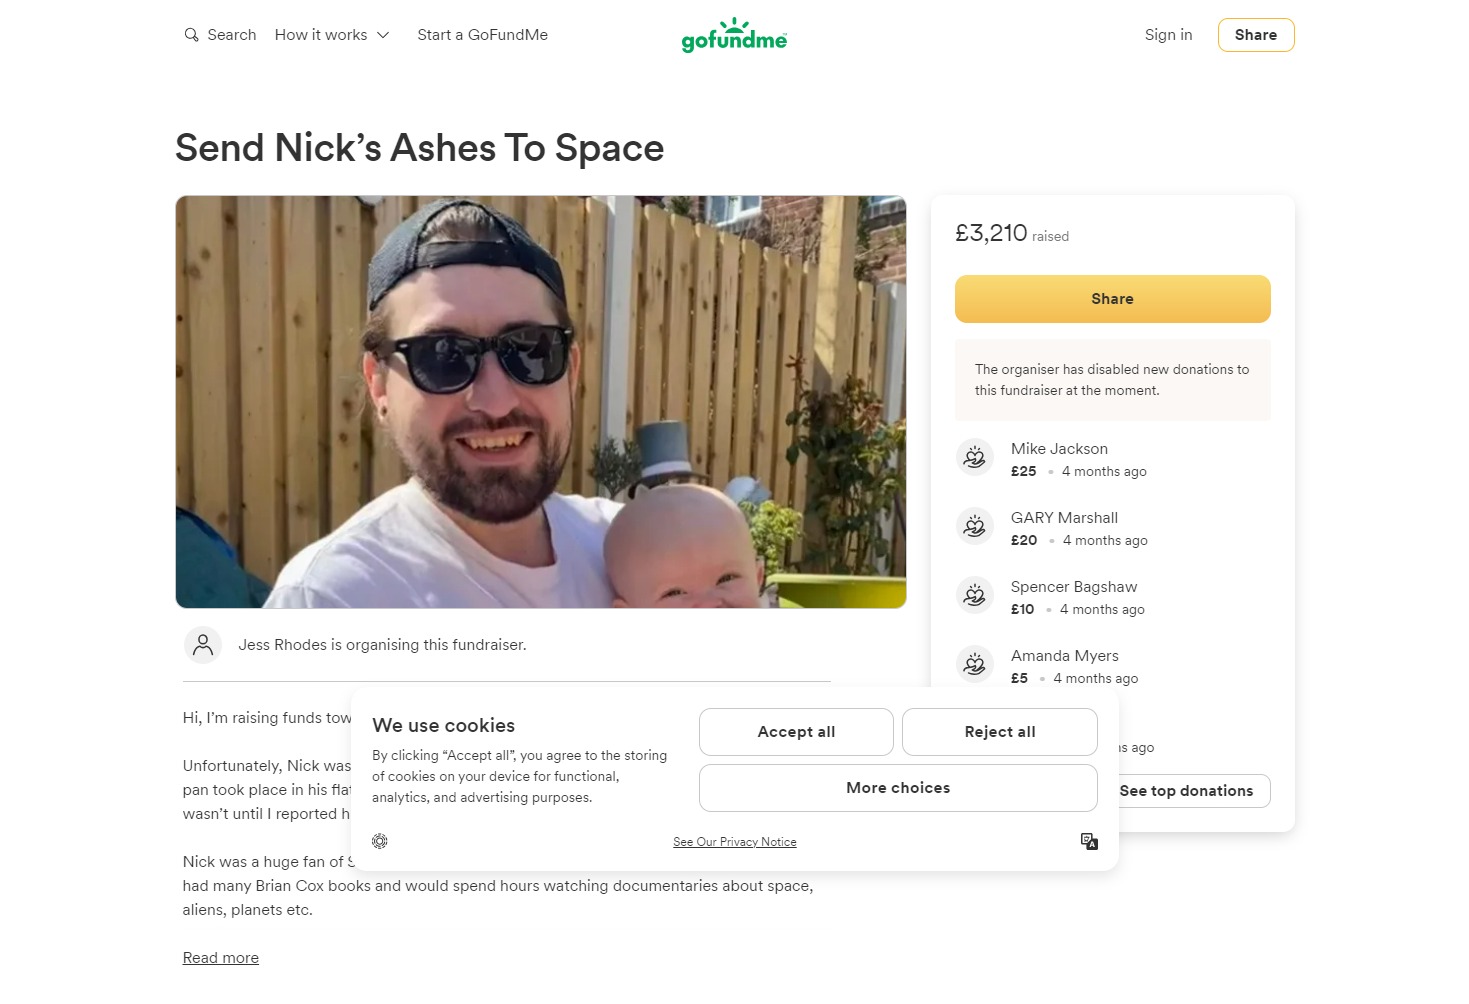 Um an sein Leben zu erinnern, startete seine Schwester Jess Rhodes einen Crowdfunding-Aufruf, um 3.000 Pfund zu sammeln, um seine Asche ins All zu schicken